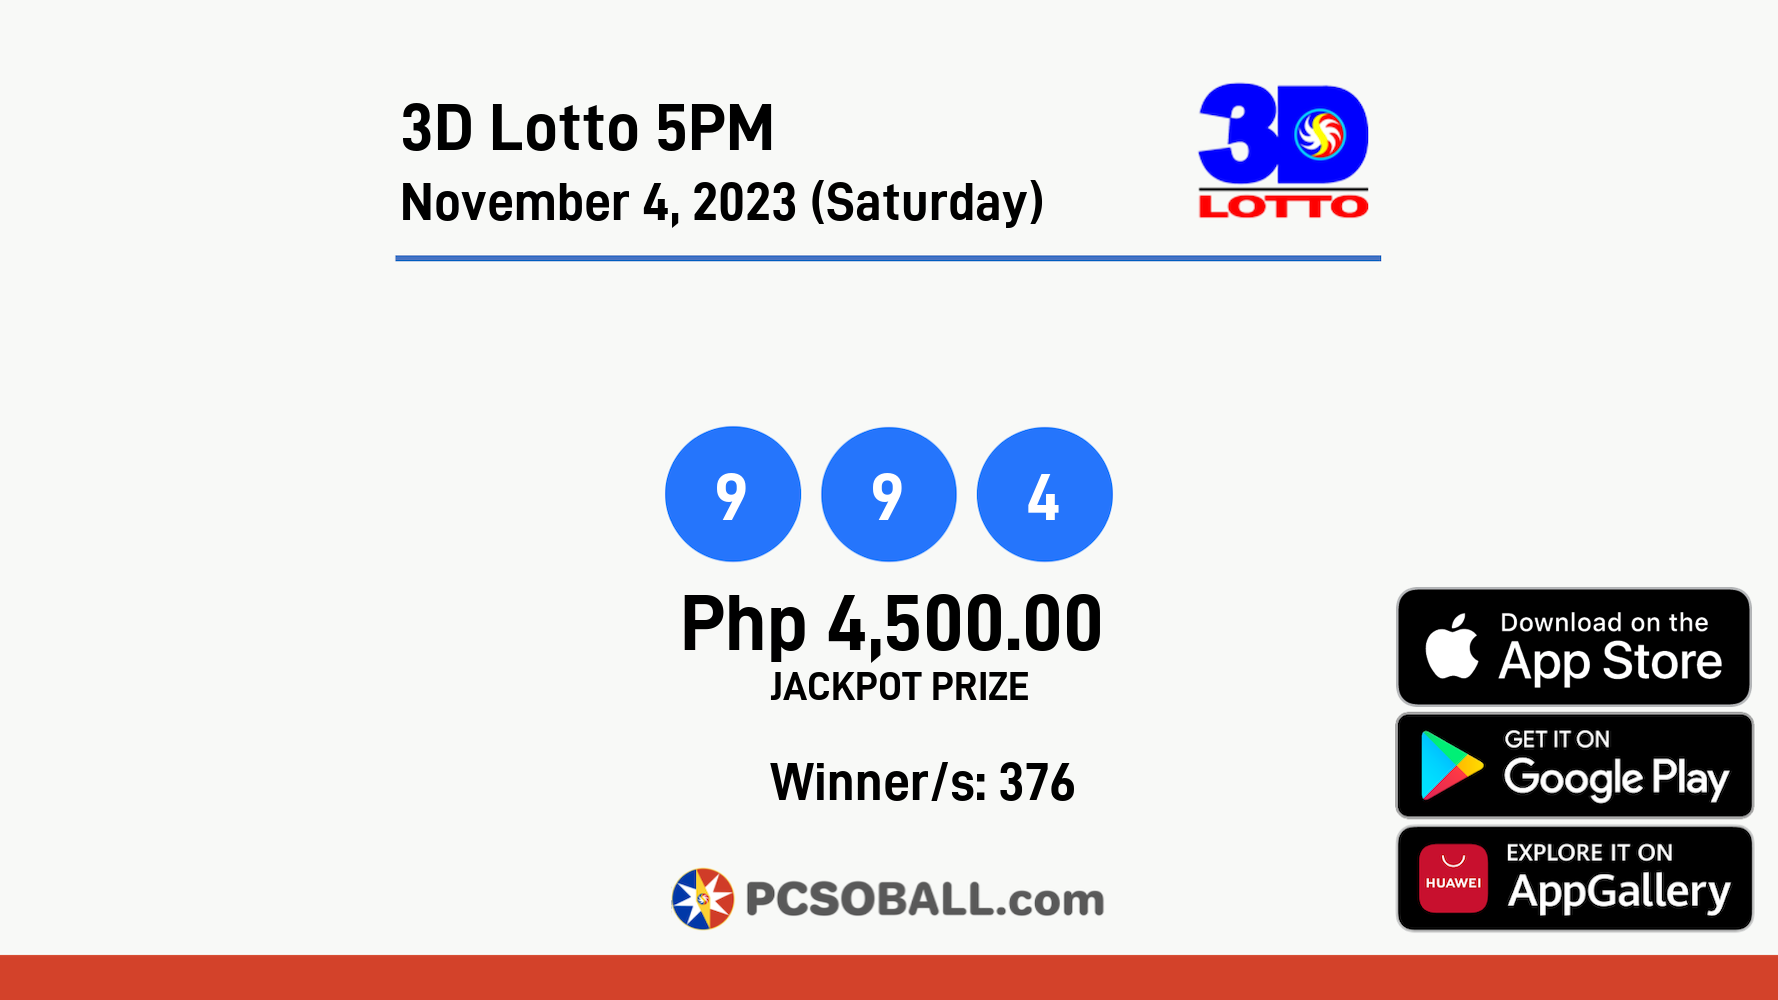 3D Lotto 5PM November 4, 2023 (Saturday) Result